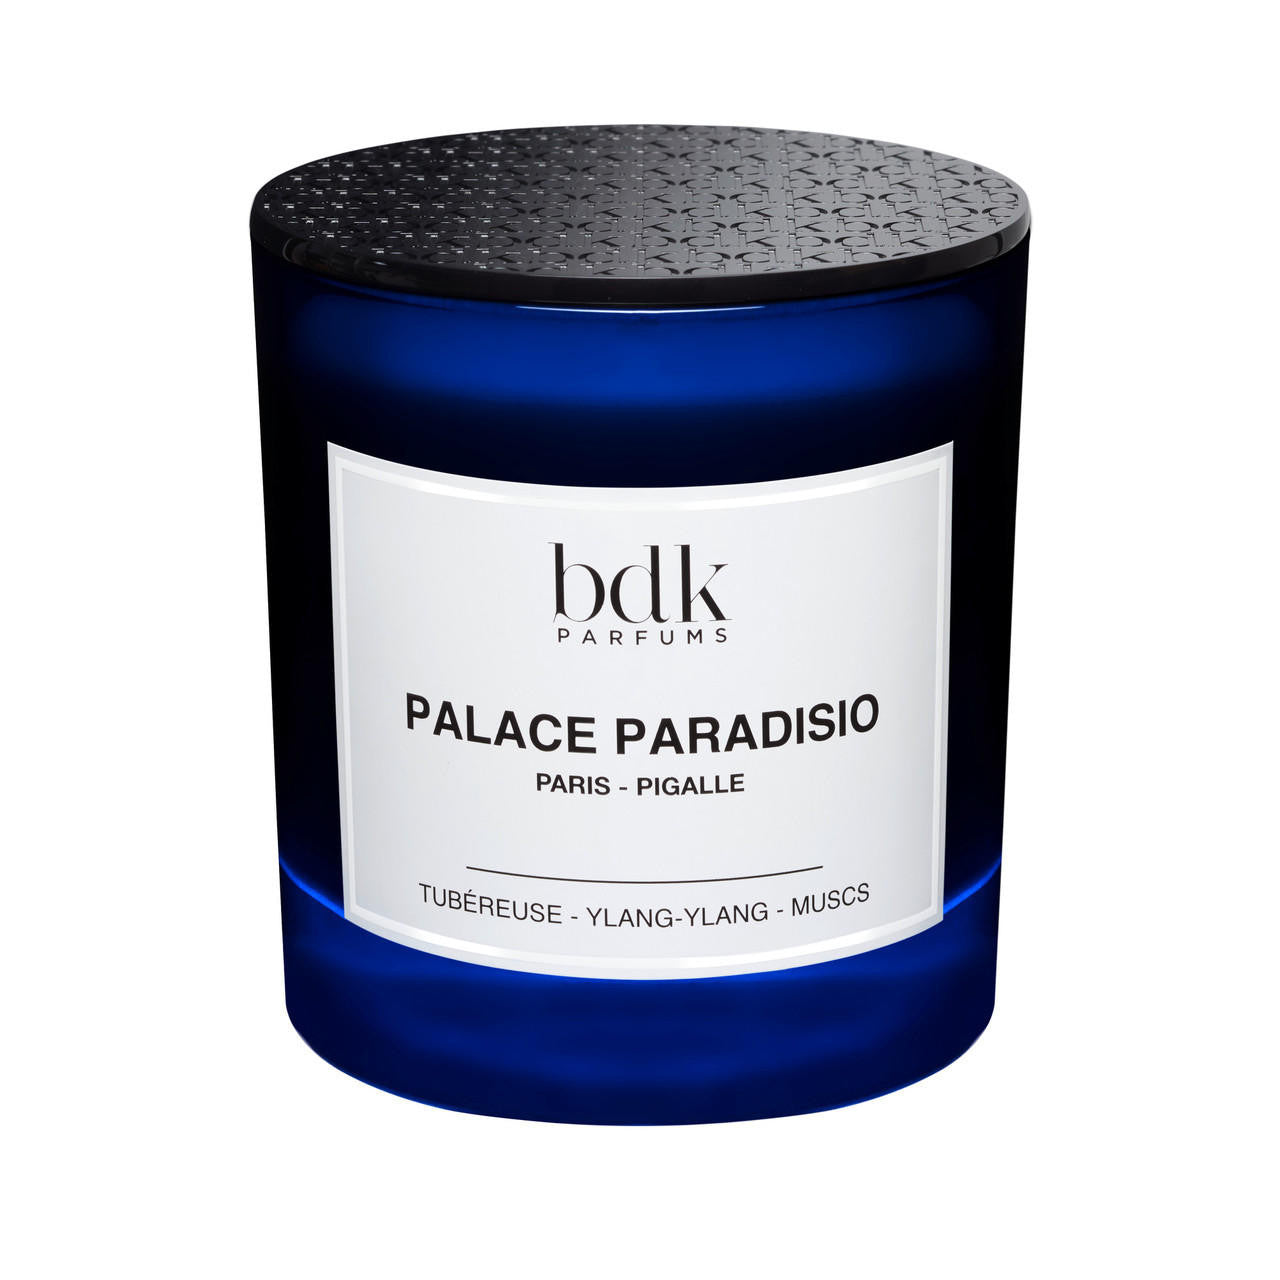  BDK Parfums PALACE PARADISIO Candle 